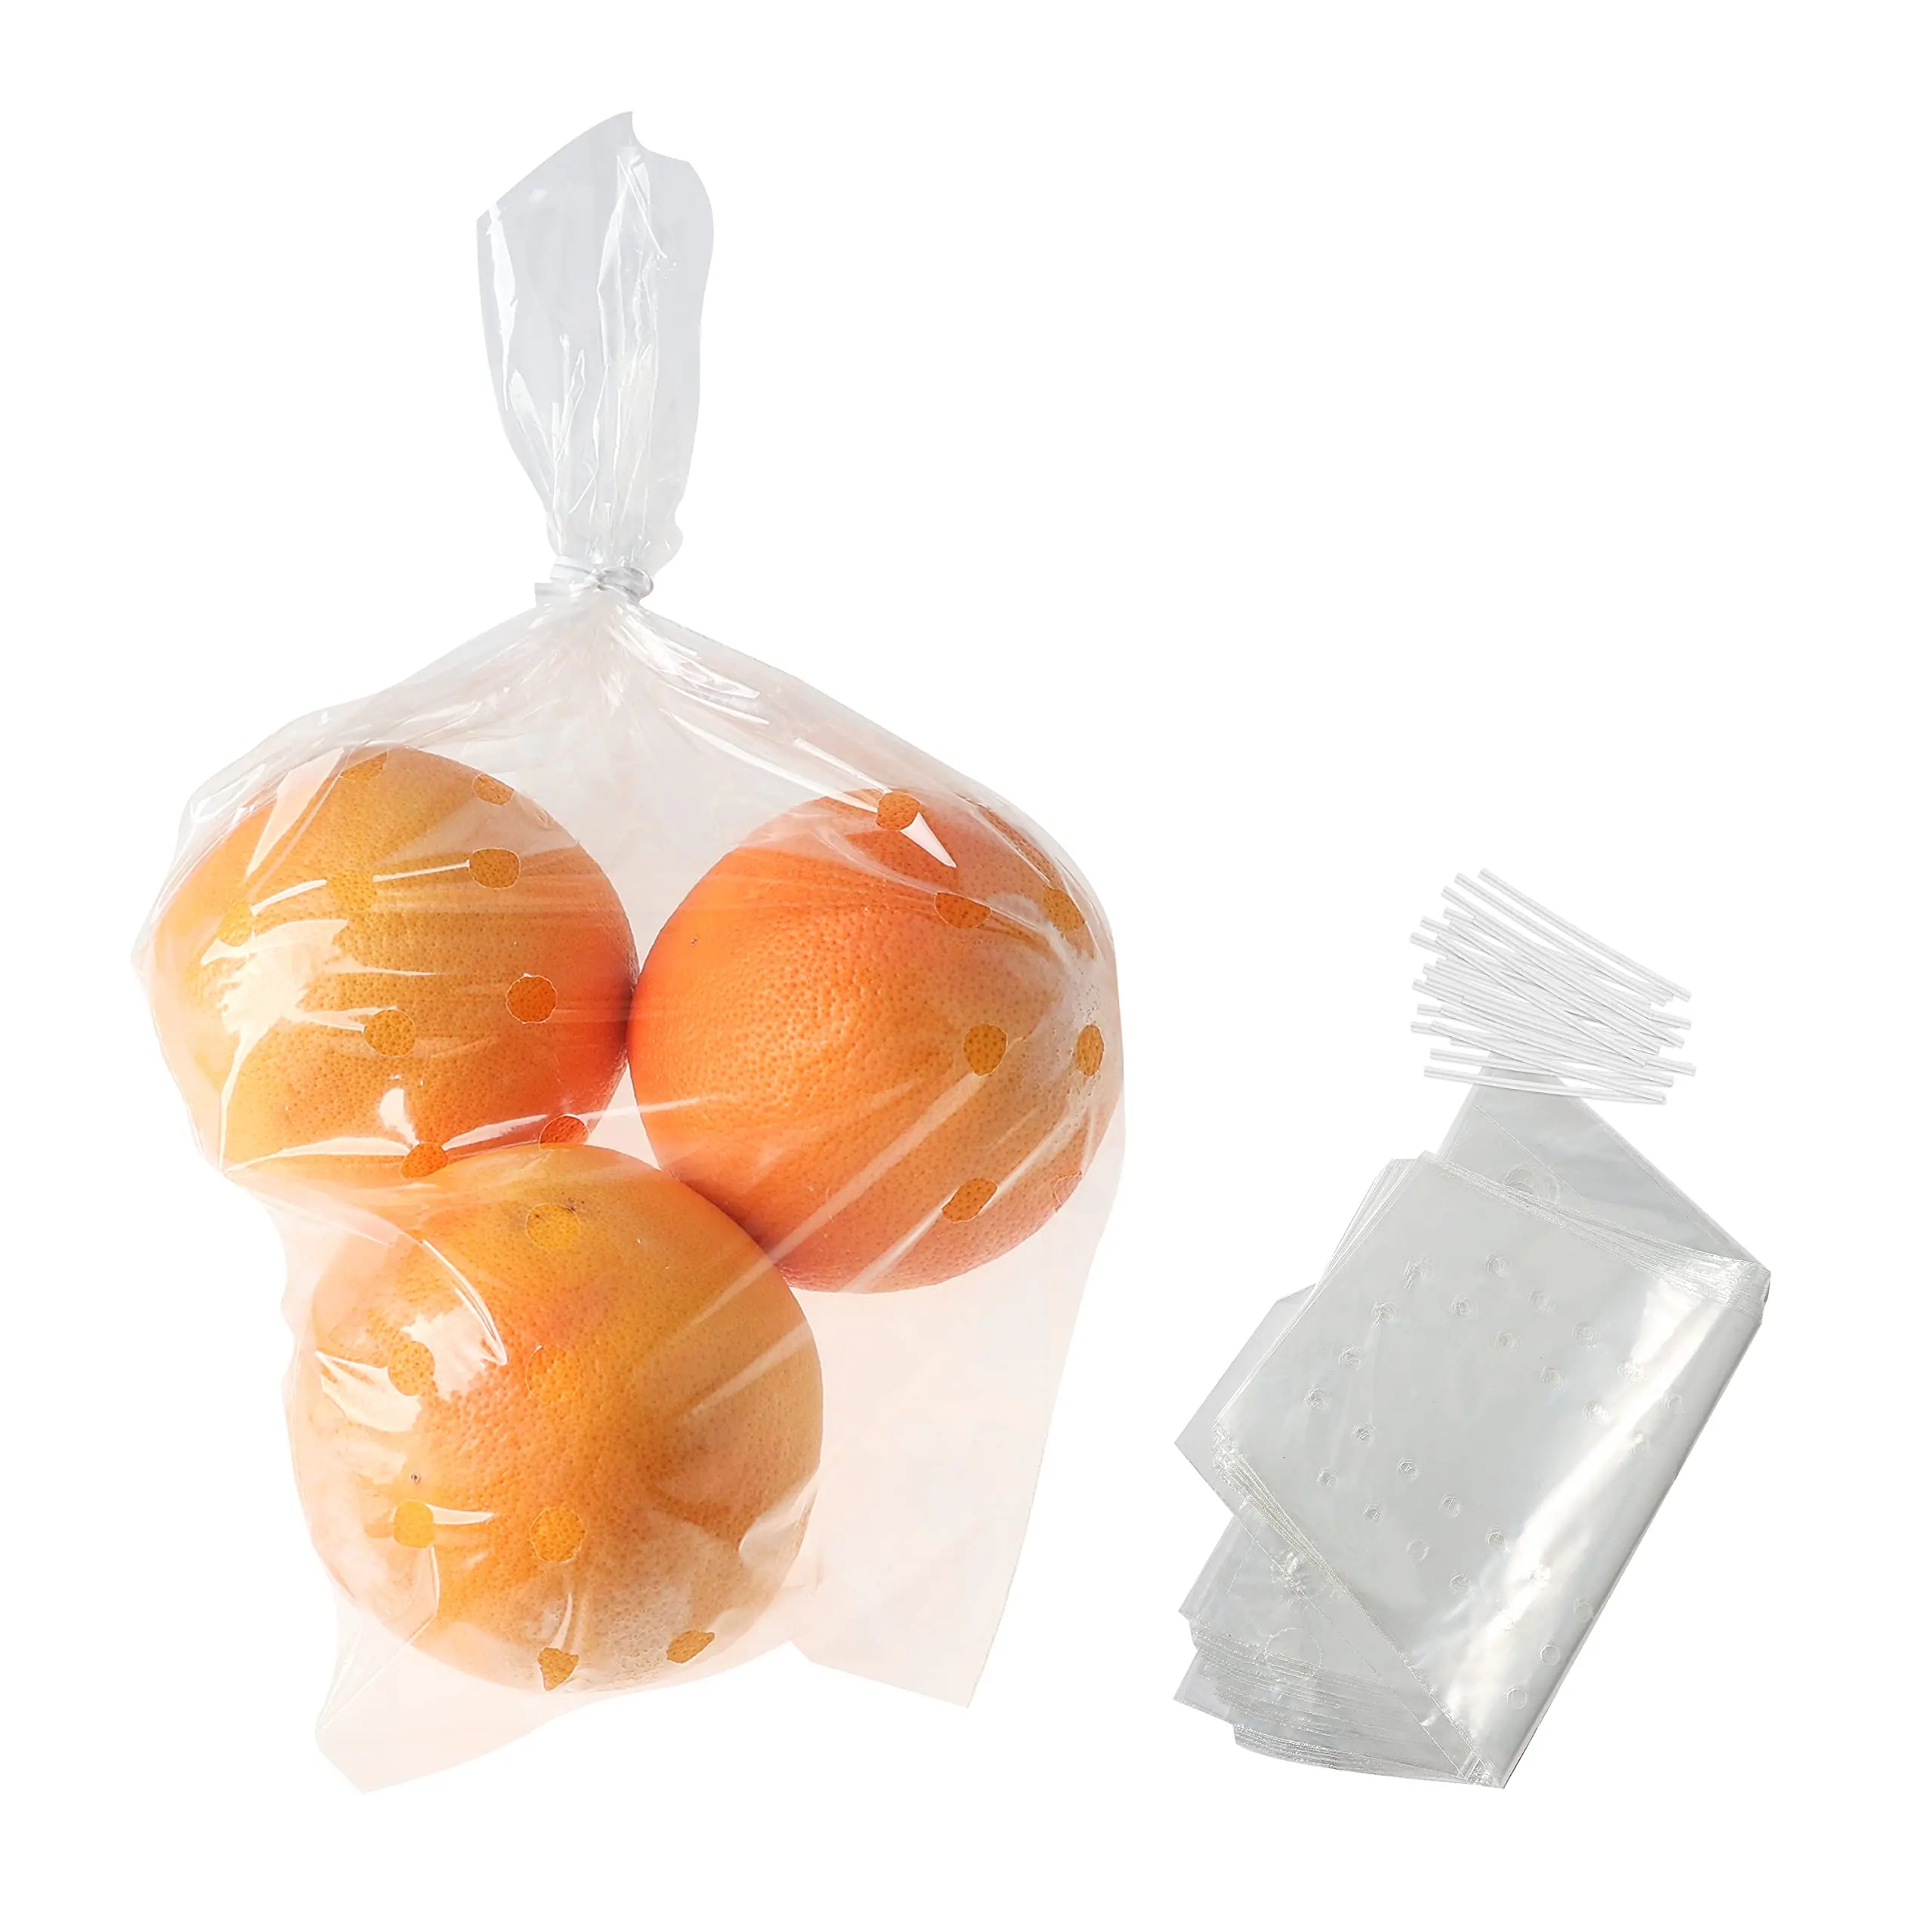 fruta en bolsa de plastico - Qué efecto tuvo la bolsa de plástico en el proceso de maduración por qué